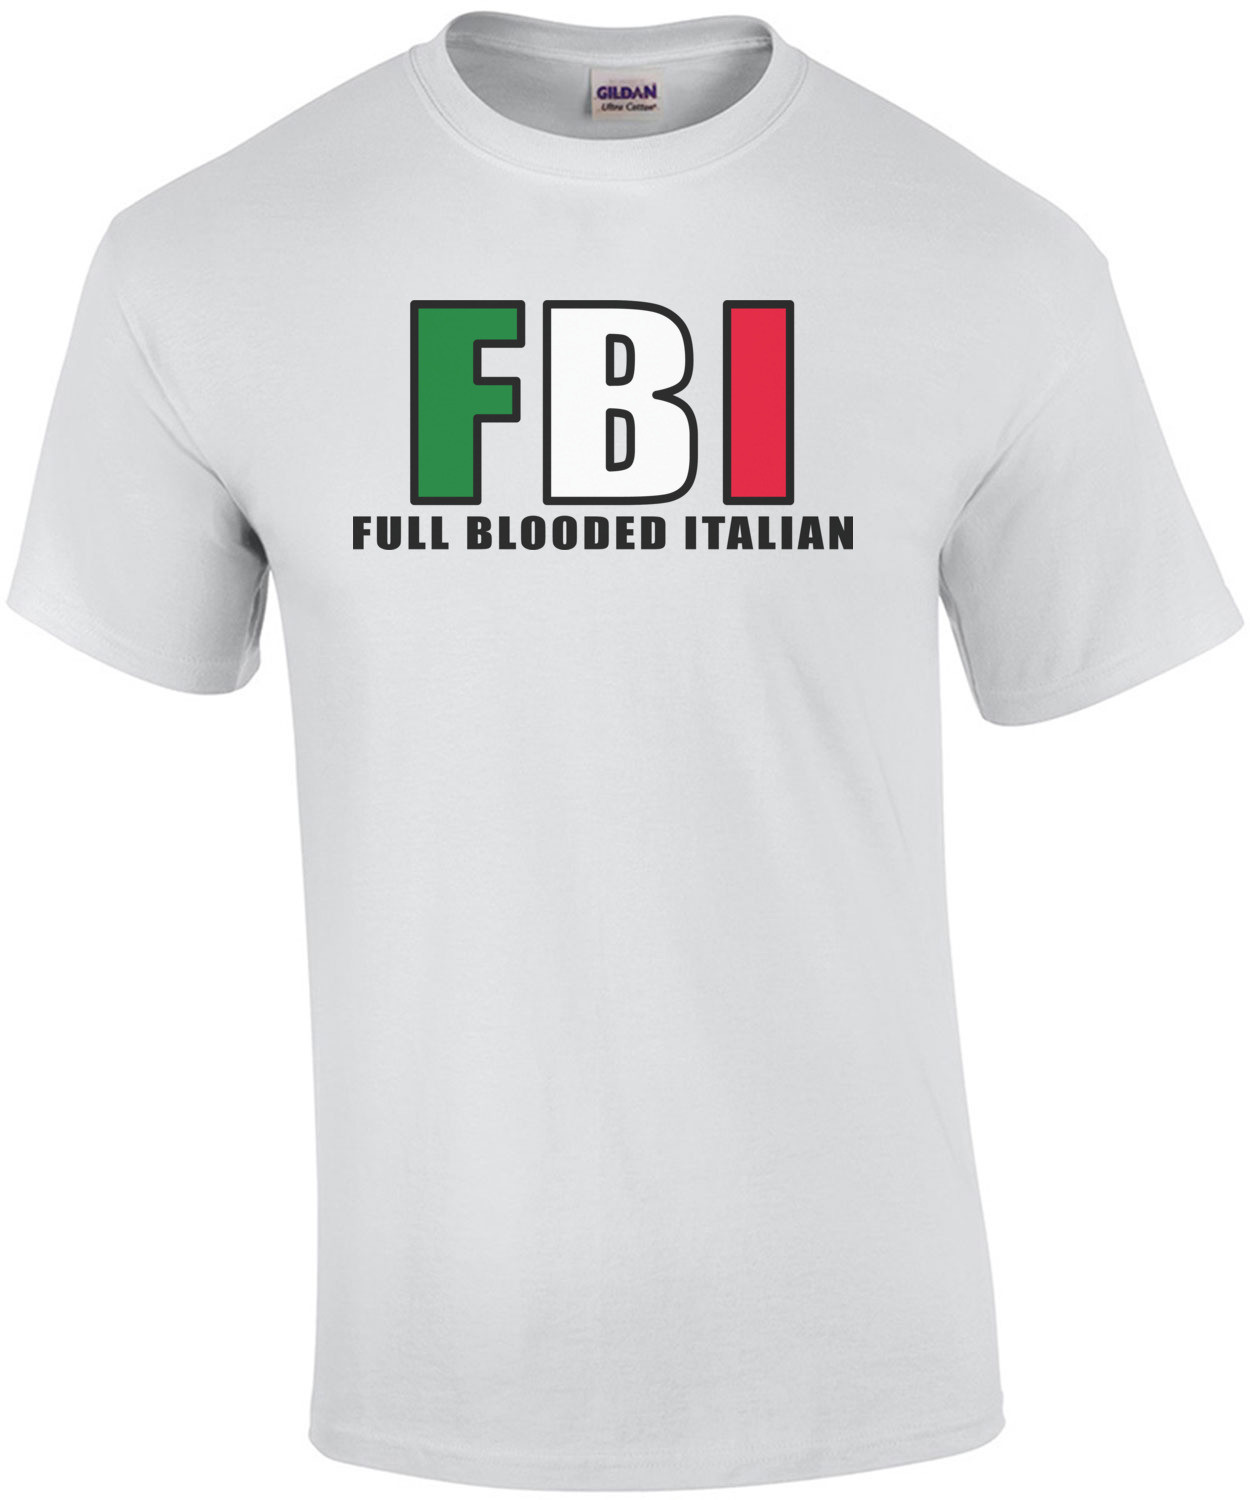 FBI - Full Blooded Italian